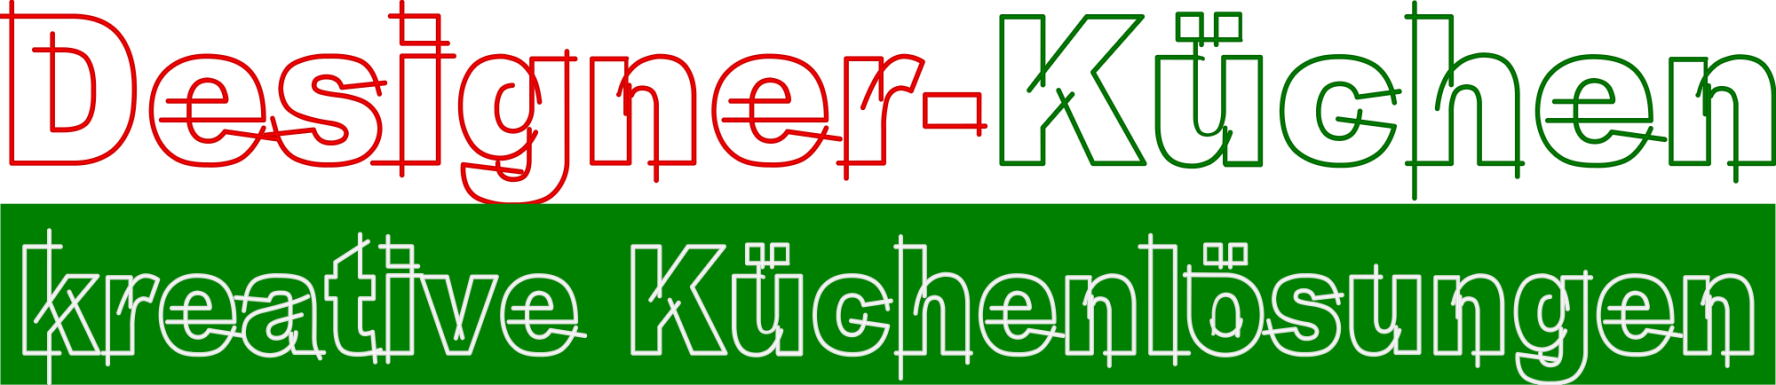 Designer-Küchen - kreative Küchenlösungen